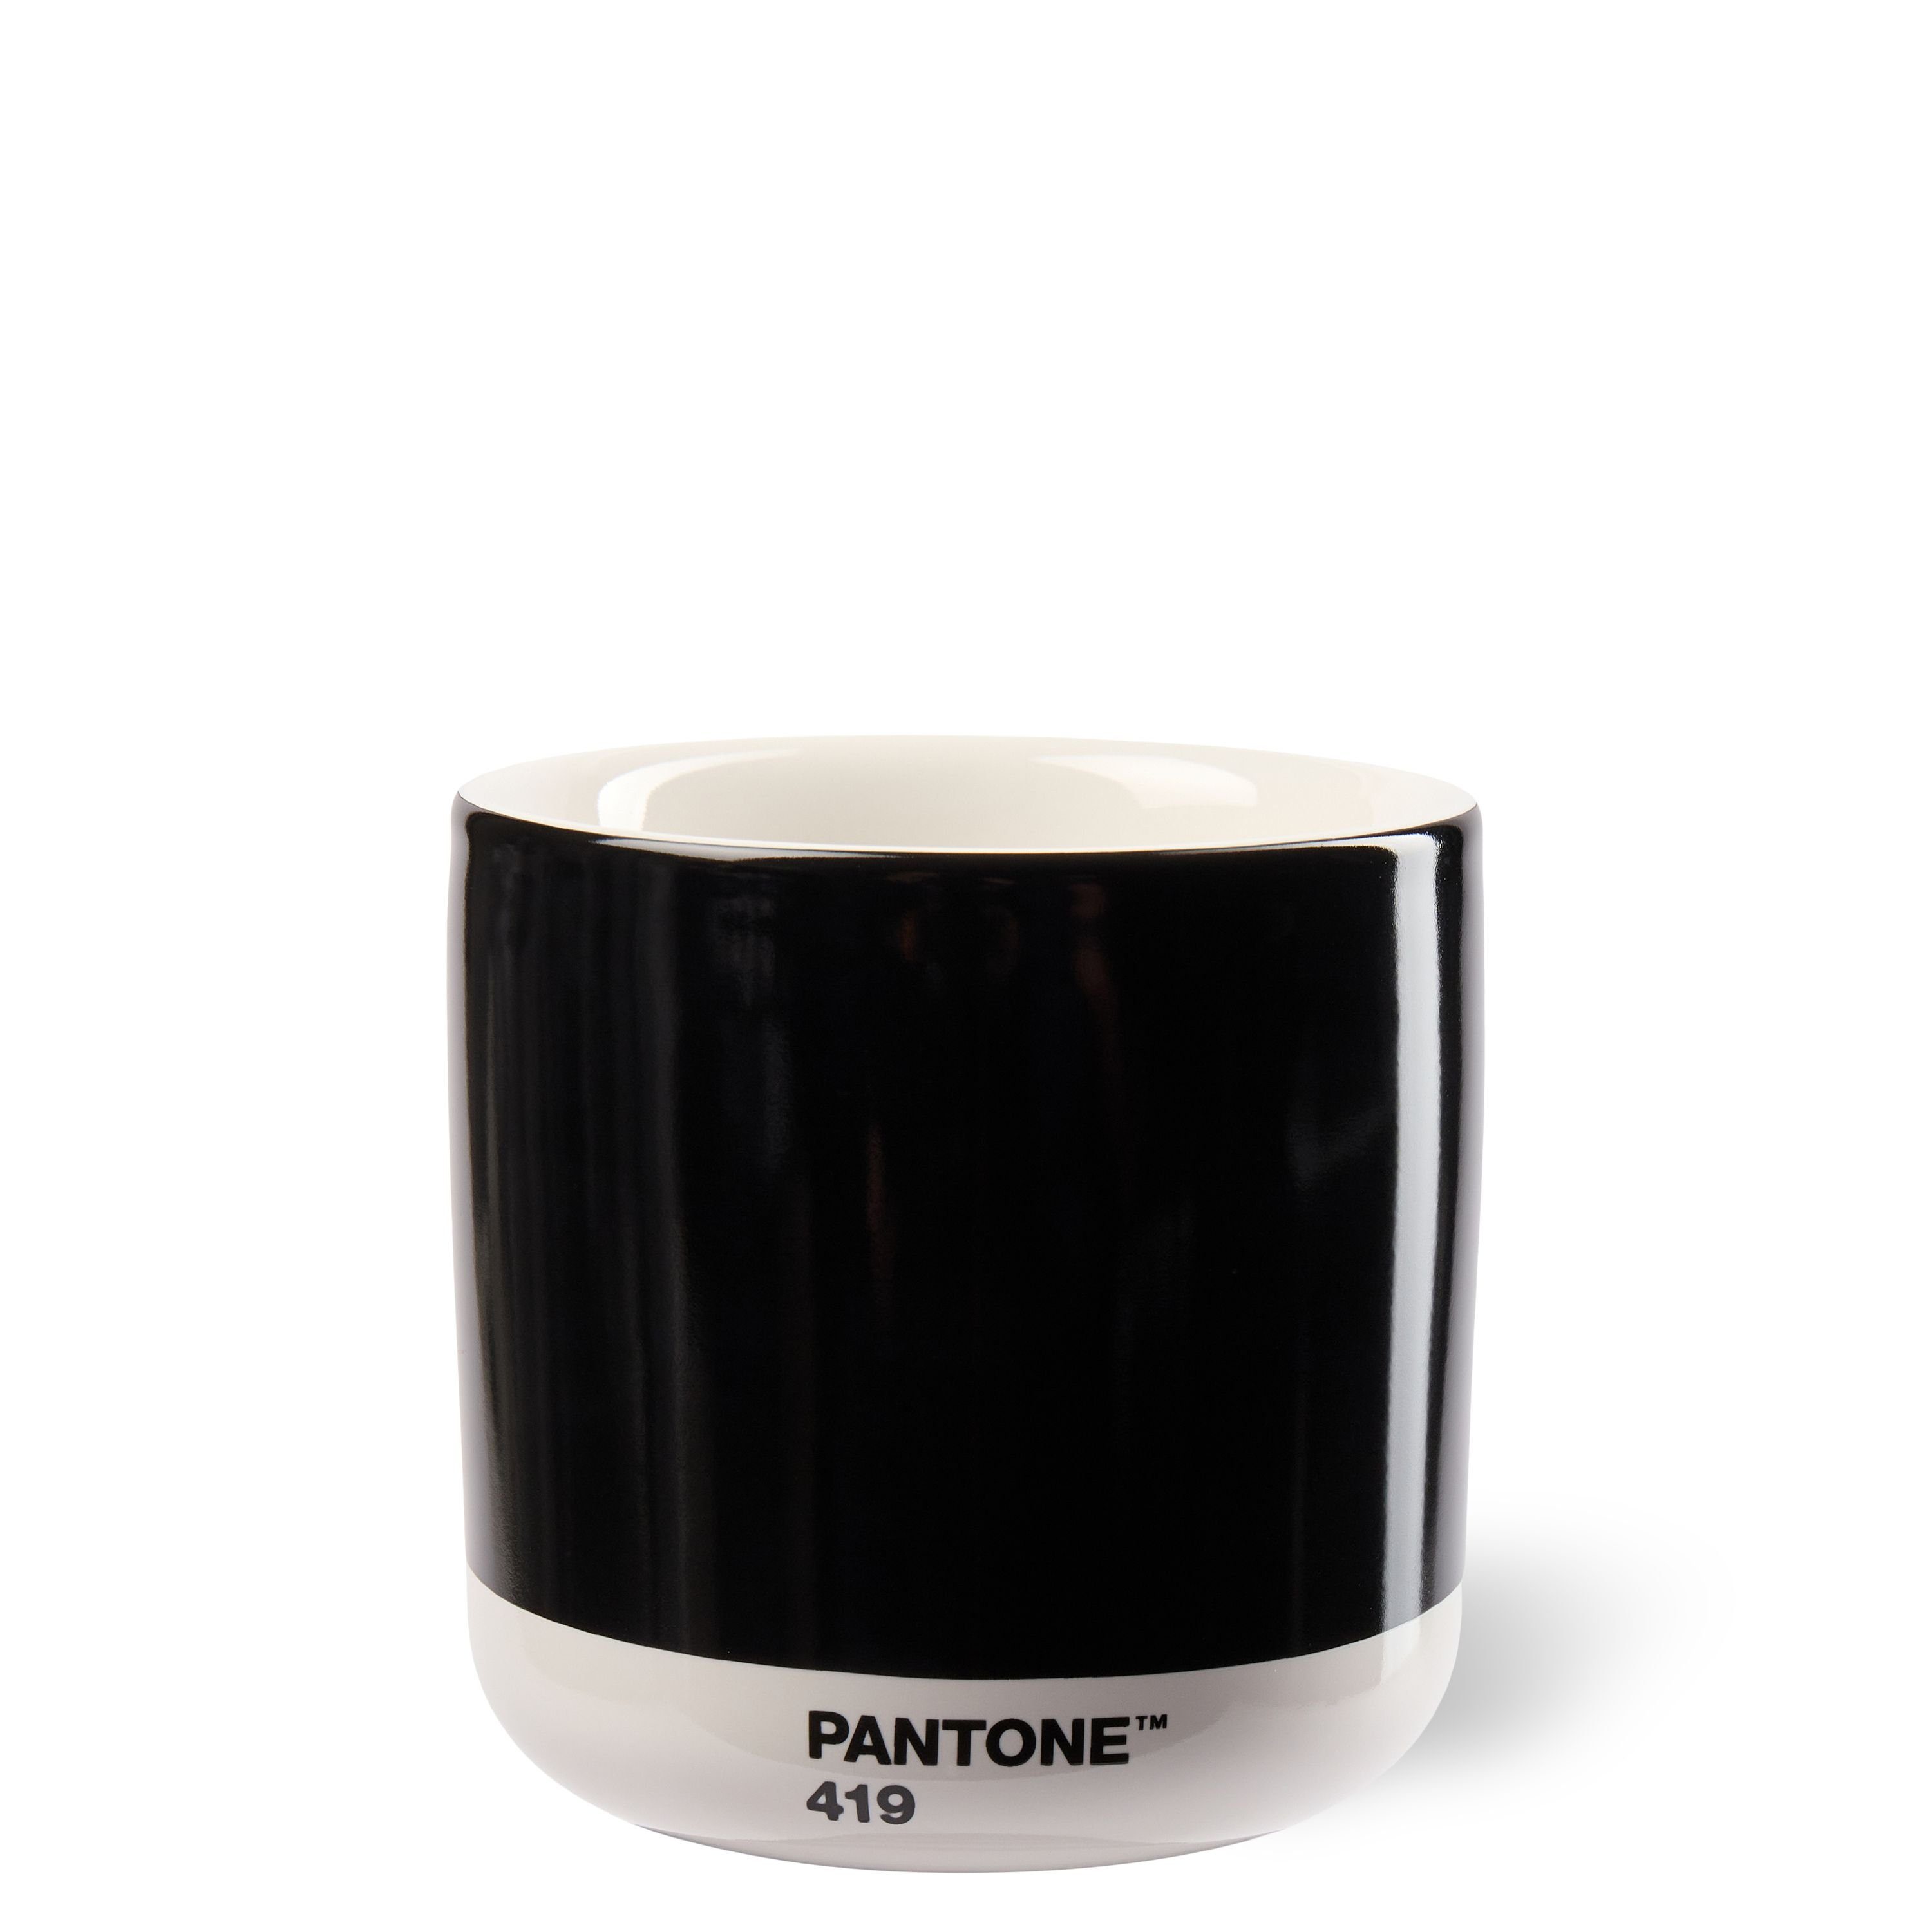 PANTONE Kaffeeservice, PANTONE Porzellan Thermobecher Latte Macchiato, 220 ml Black 419 C